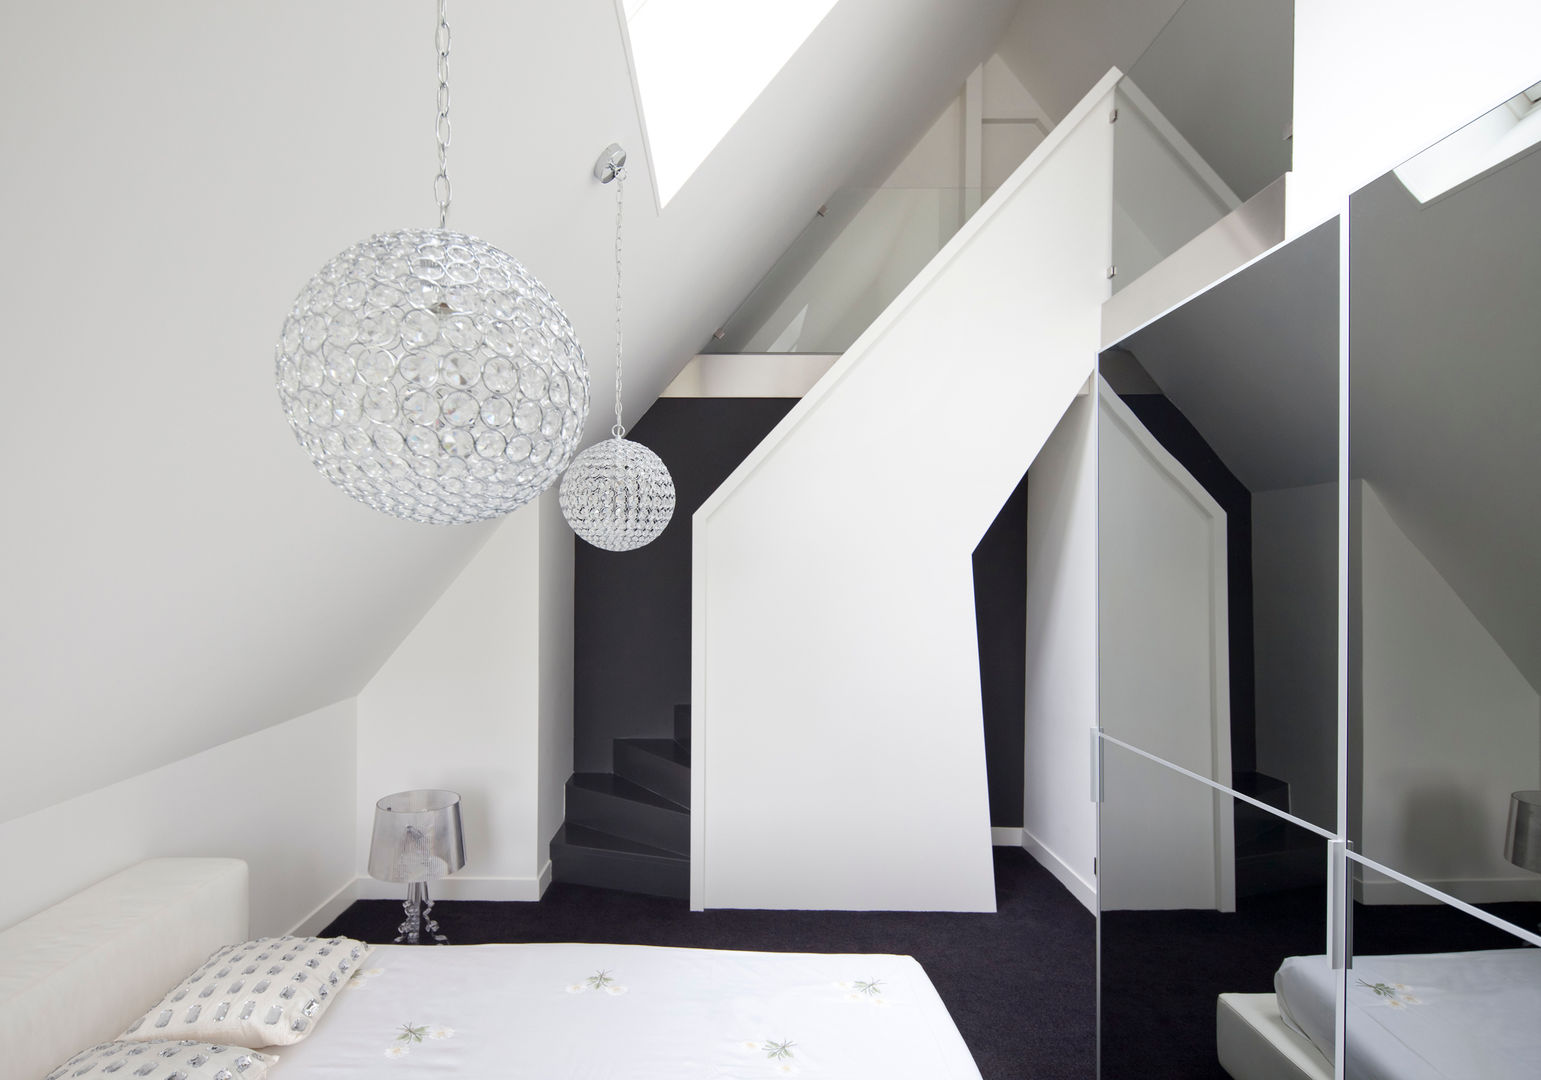 Omgeving & functionaliteit verbonden in een verbazingwekkende villa in Vinkeveen, MEF Architect MEF Architect ห้องนอน